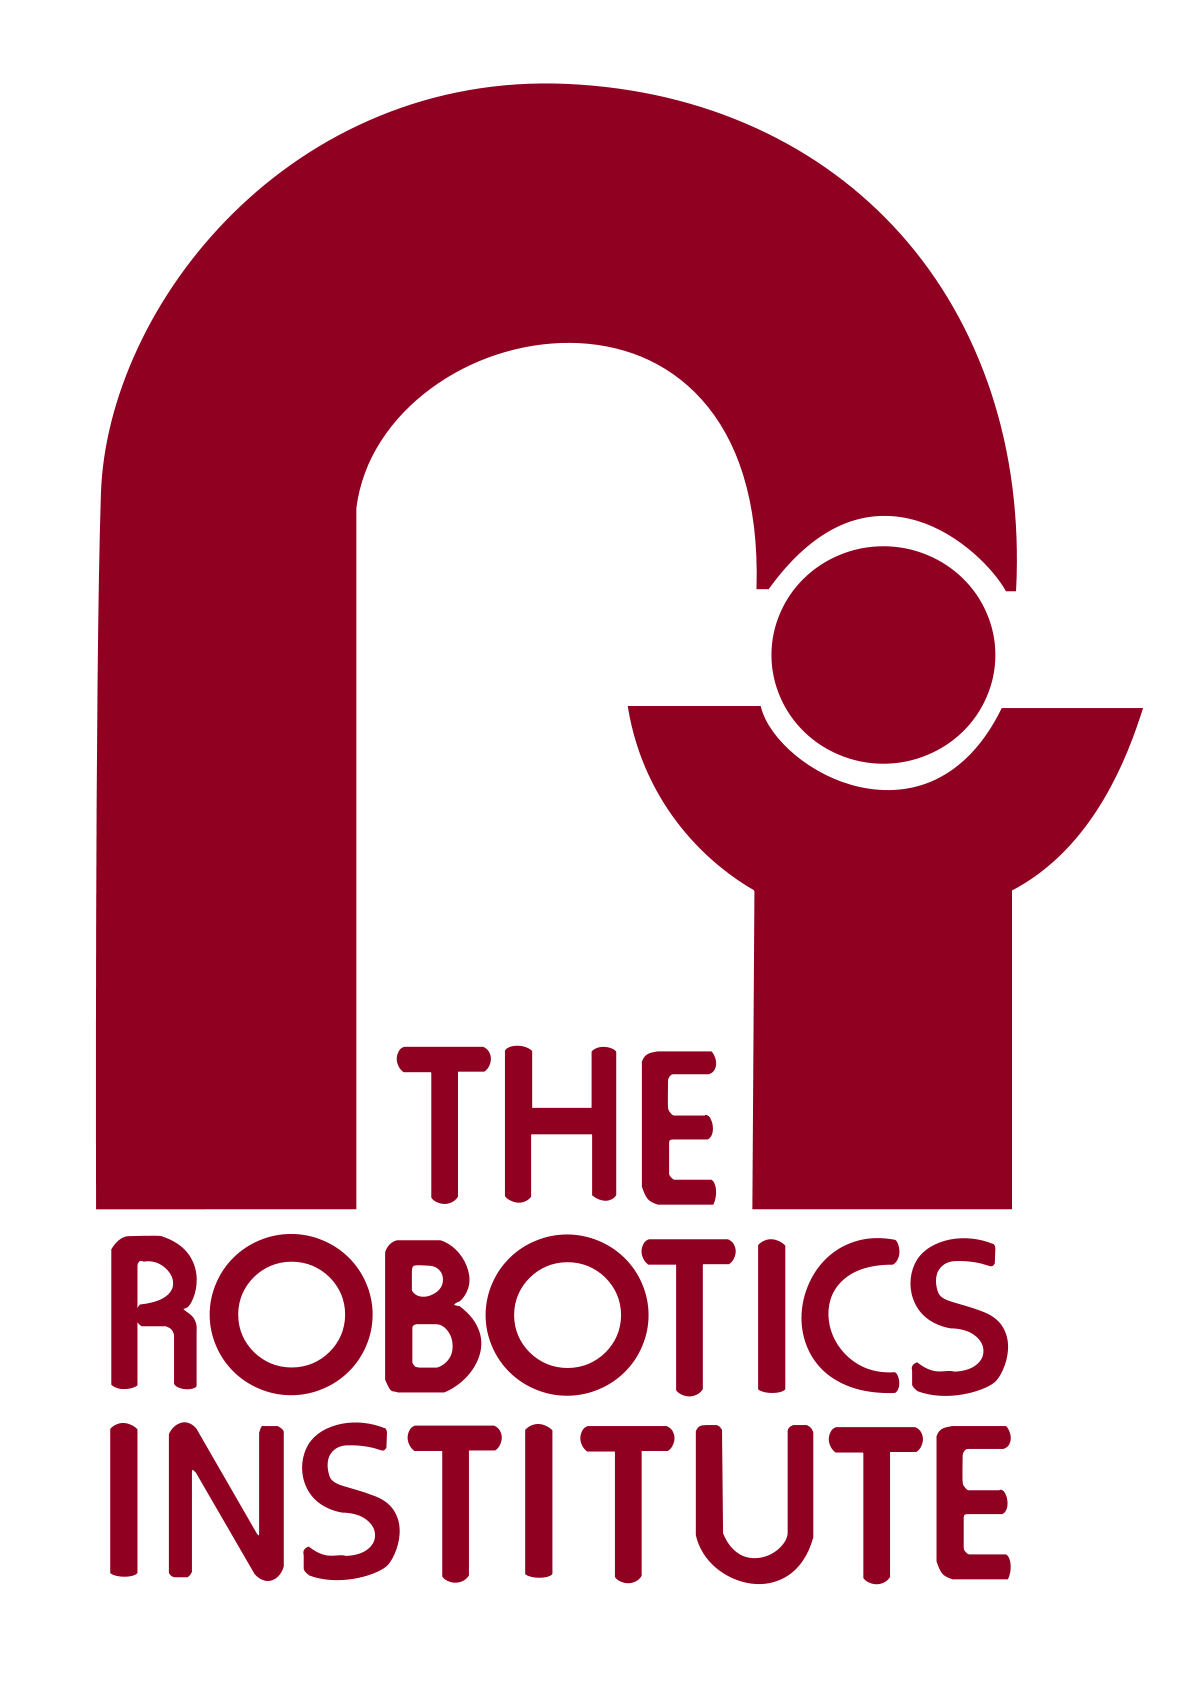 Carnegie Melon Logo - Robotics Institute